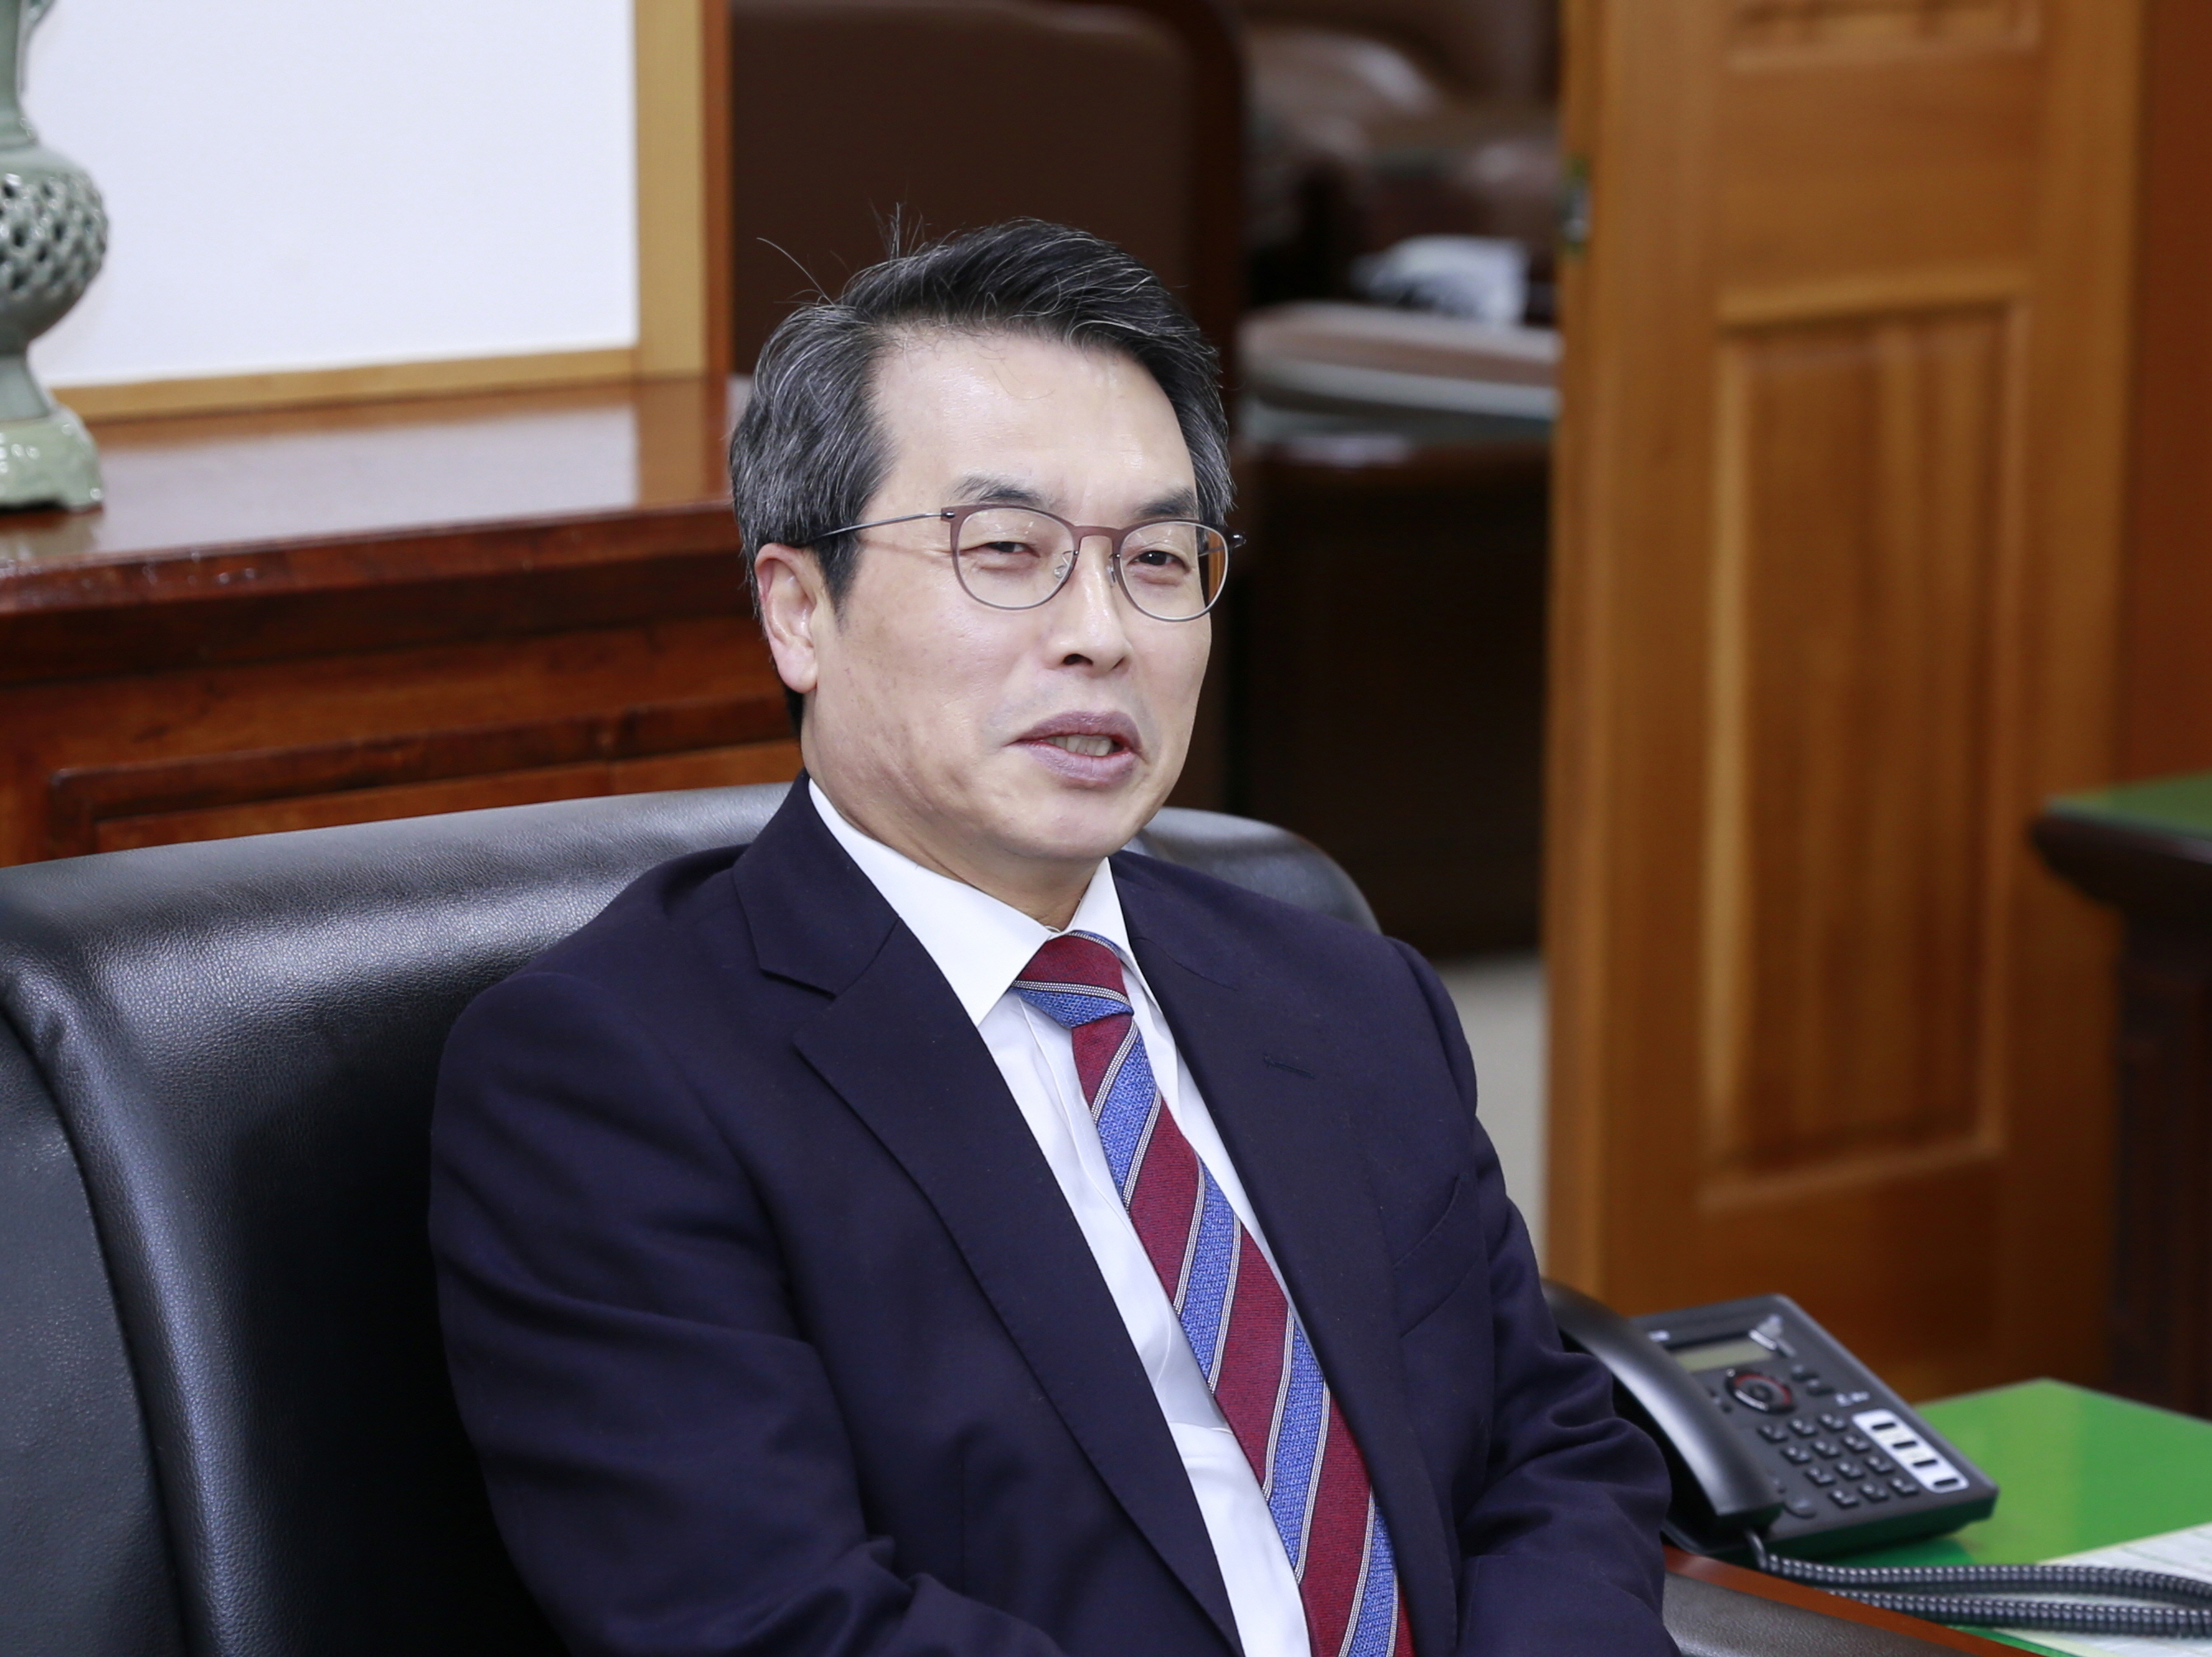 곽병선 총장이 4년 임기 동안의 각오와 대학 발전 방향 등에 대해 밝히고 있다.